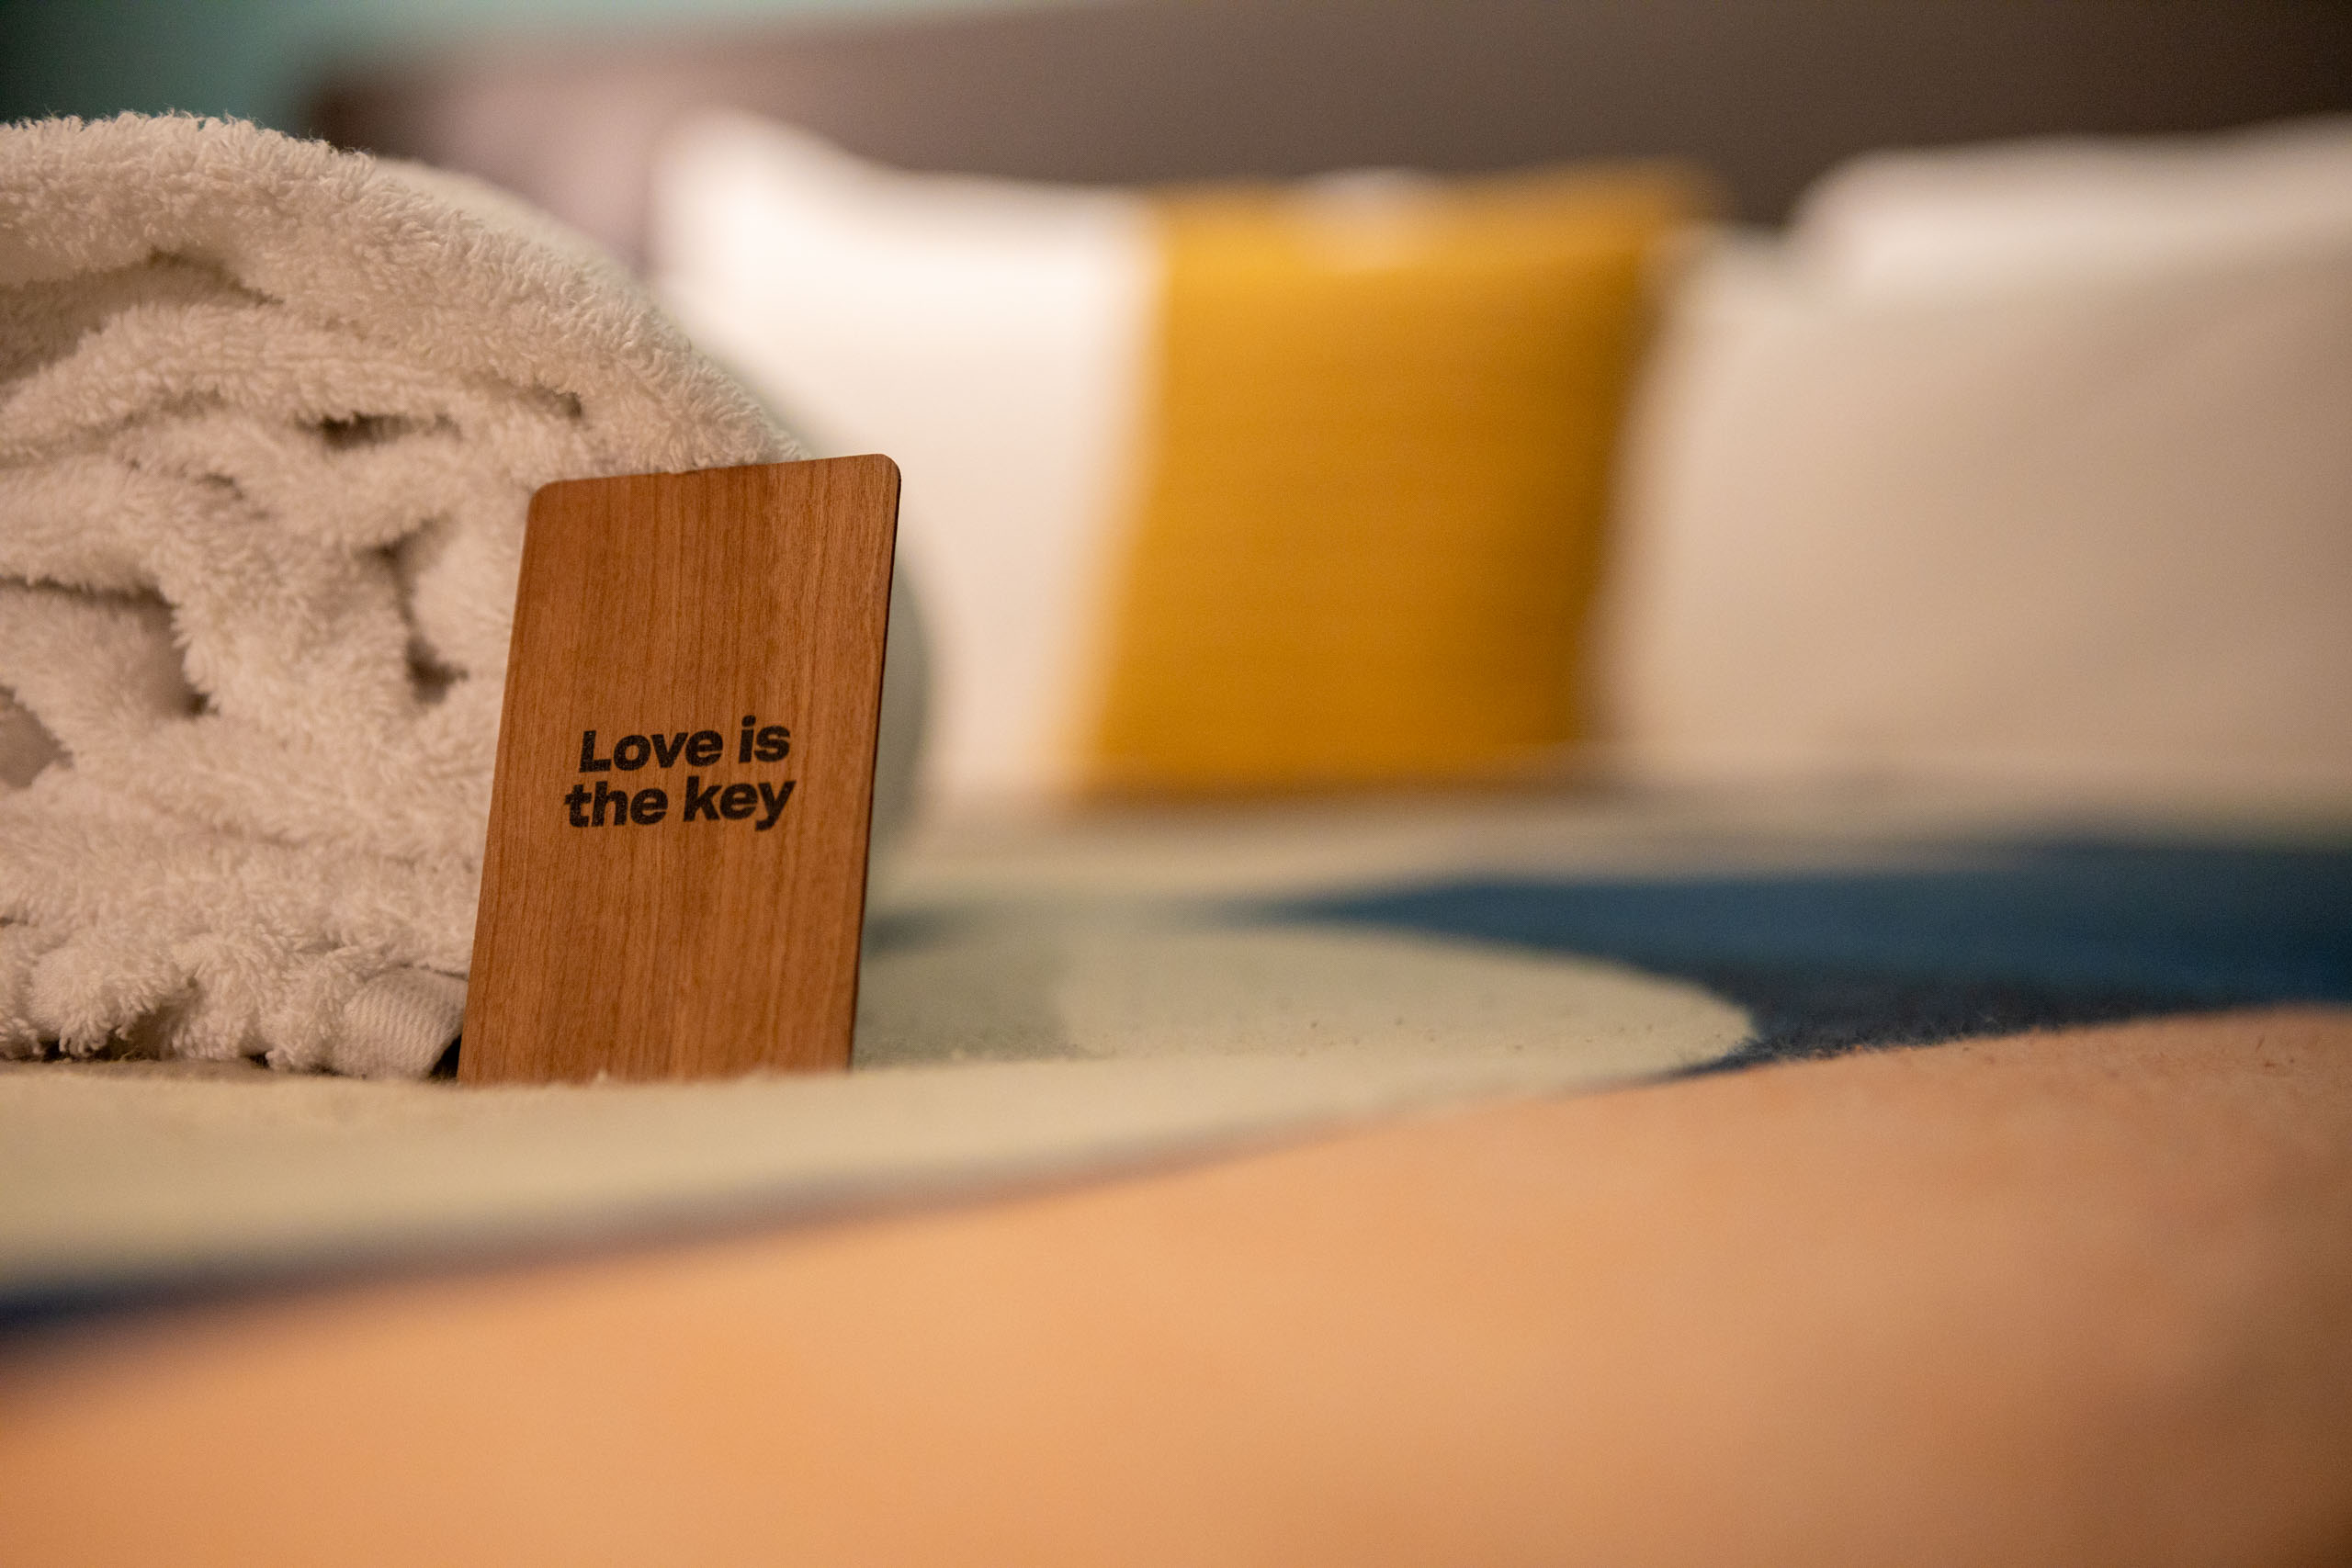 Bed met roze dekbed met erop opgerolde handdoeken en de kamersleutel, een houten pasje met 'Love is the key' erop.